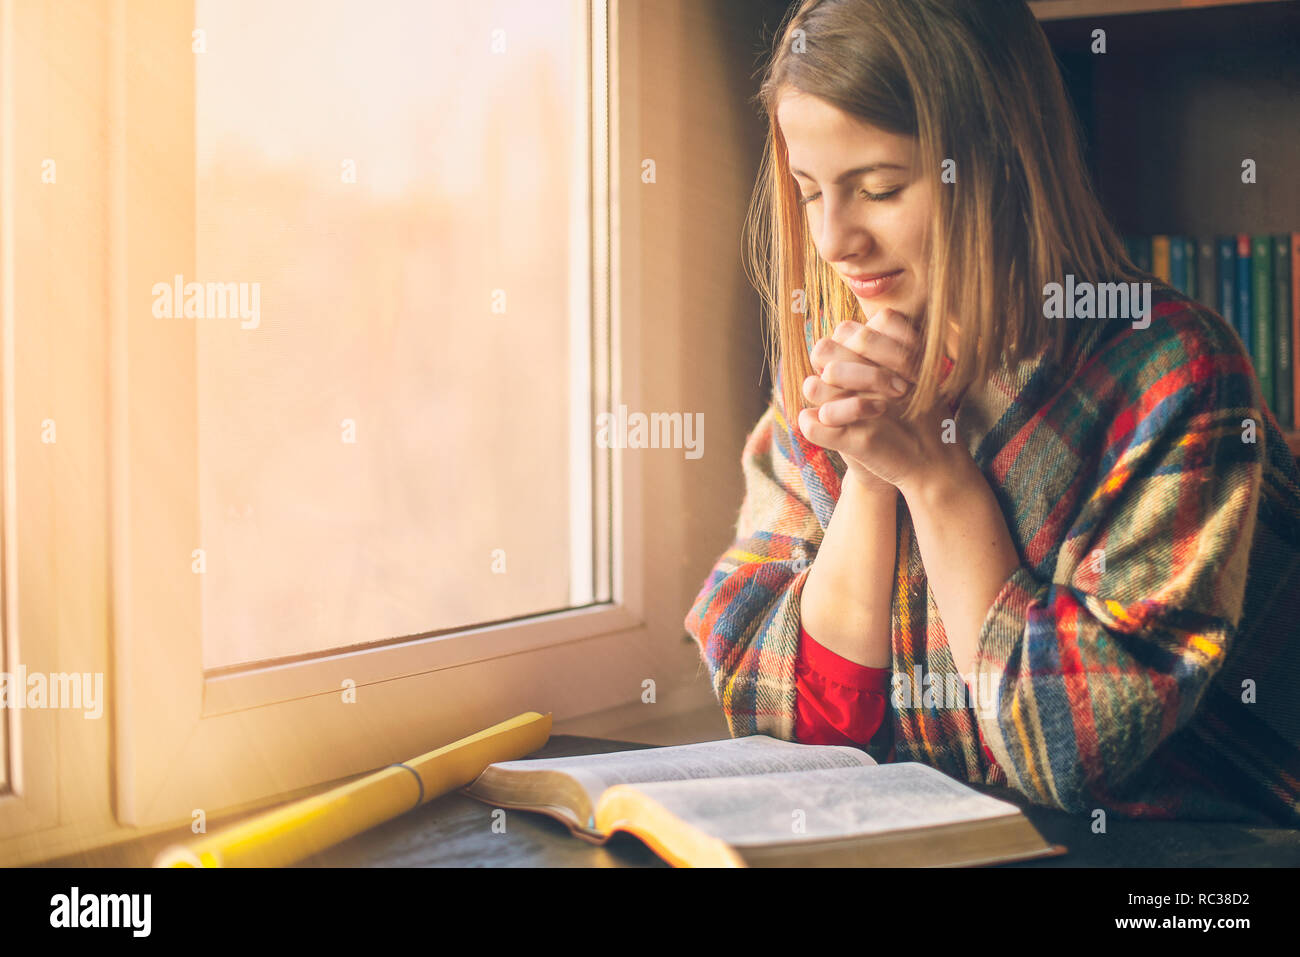 Belle femme priant d'avoir la Bible ouverte devant elle Banque D'Images